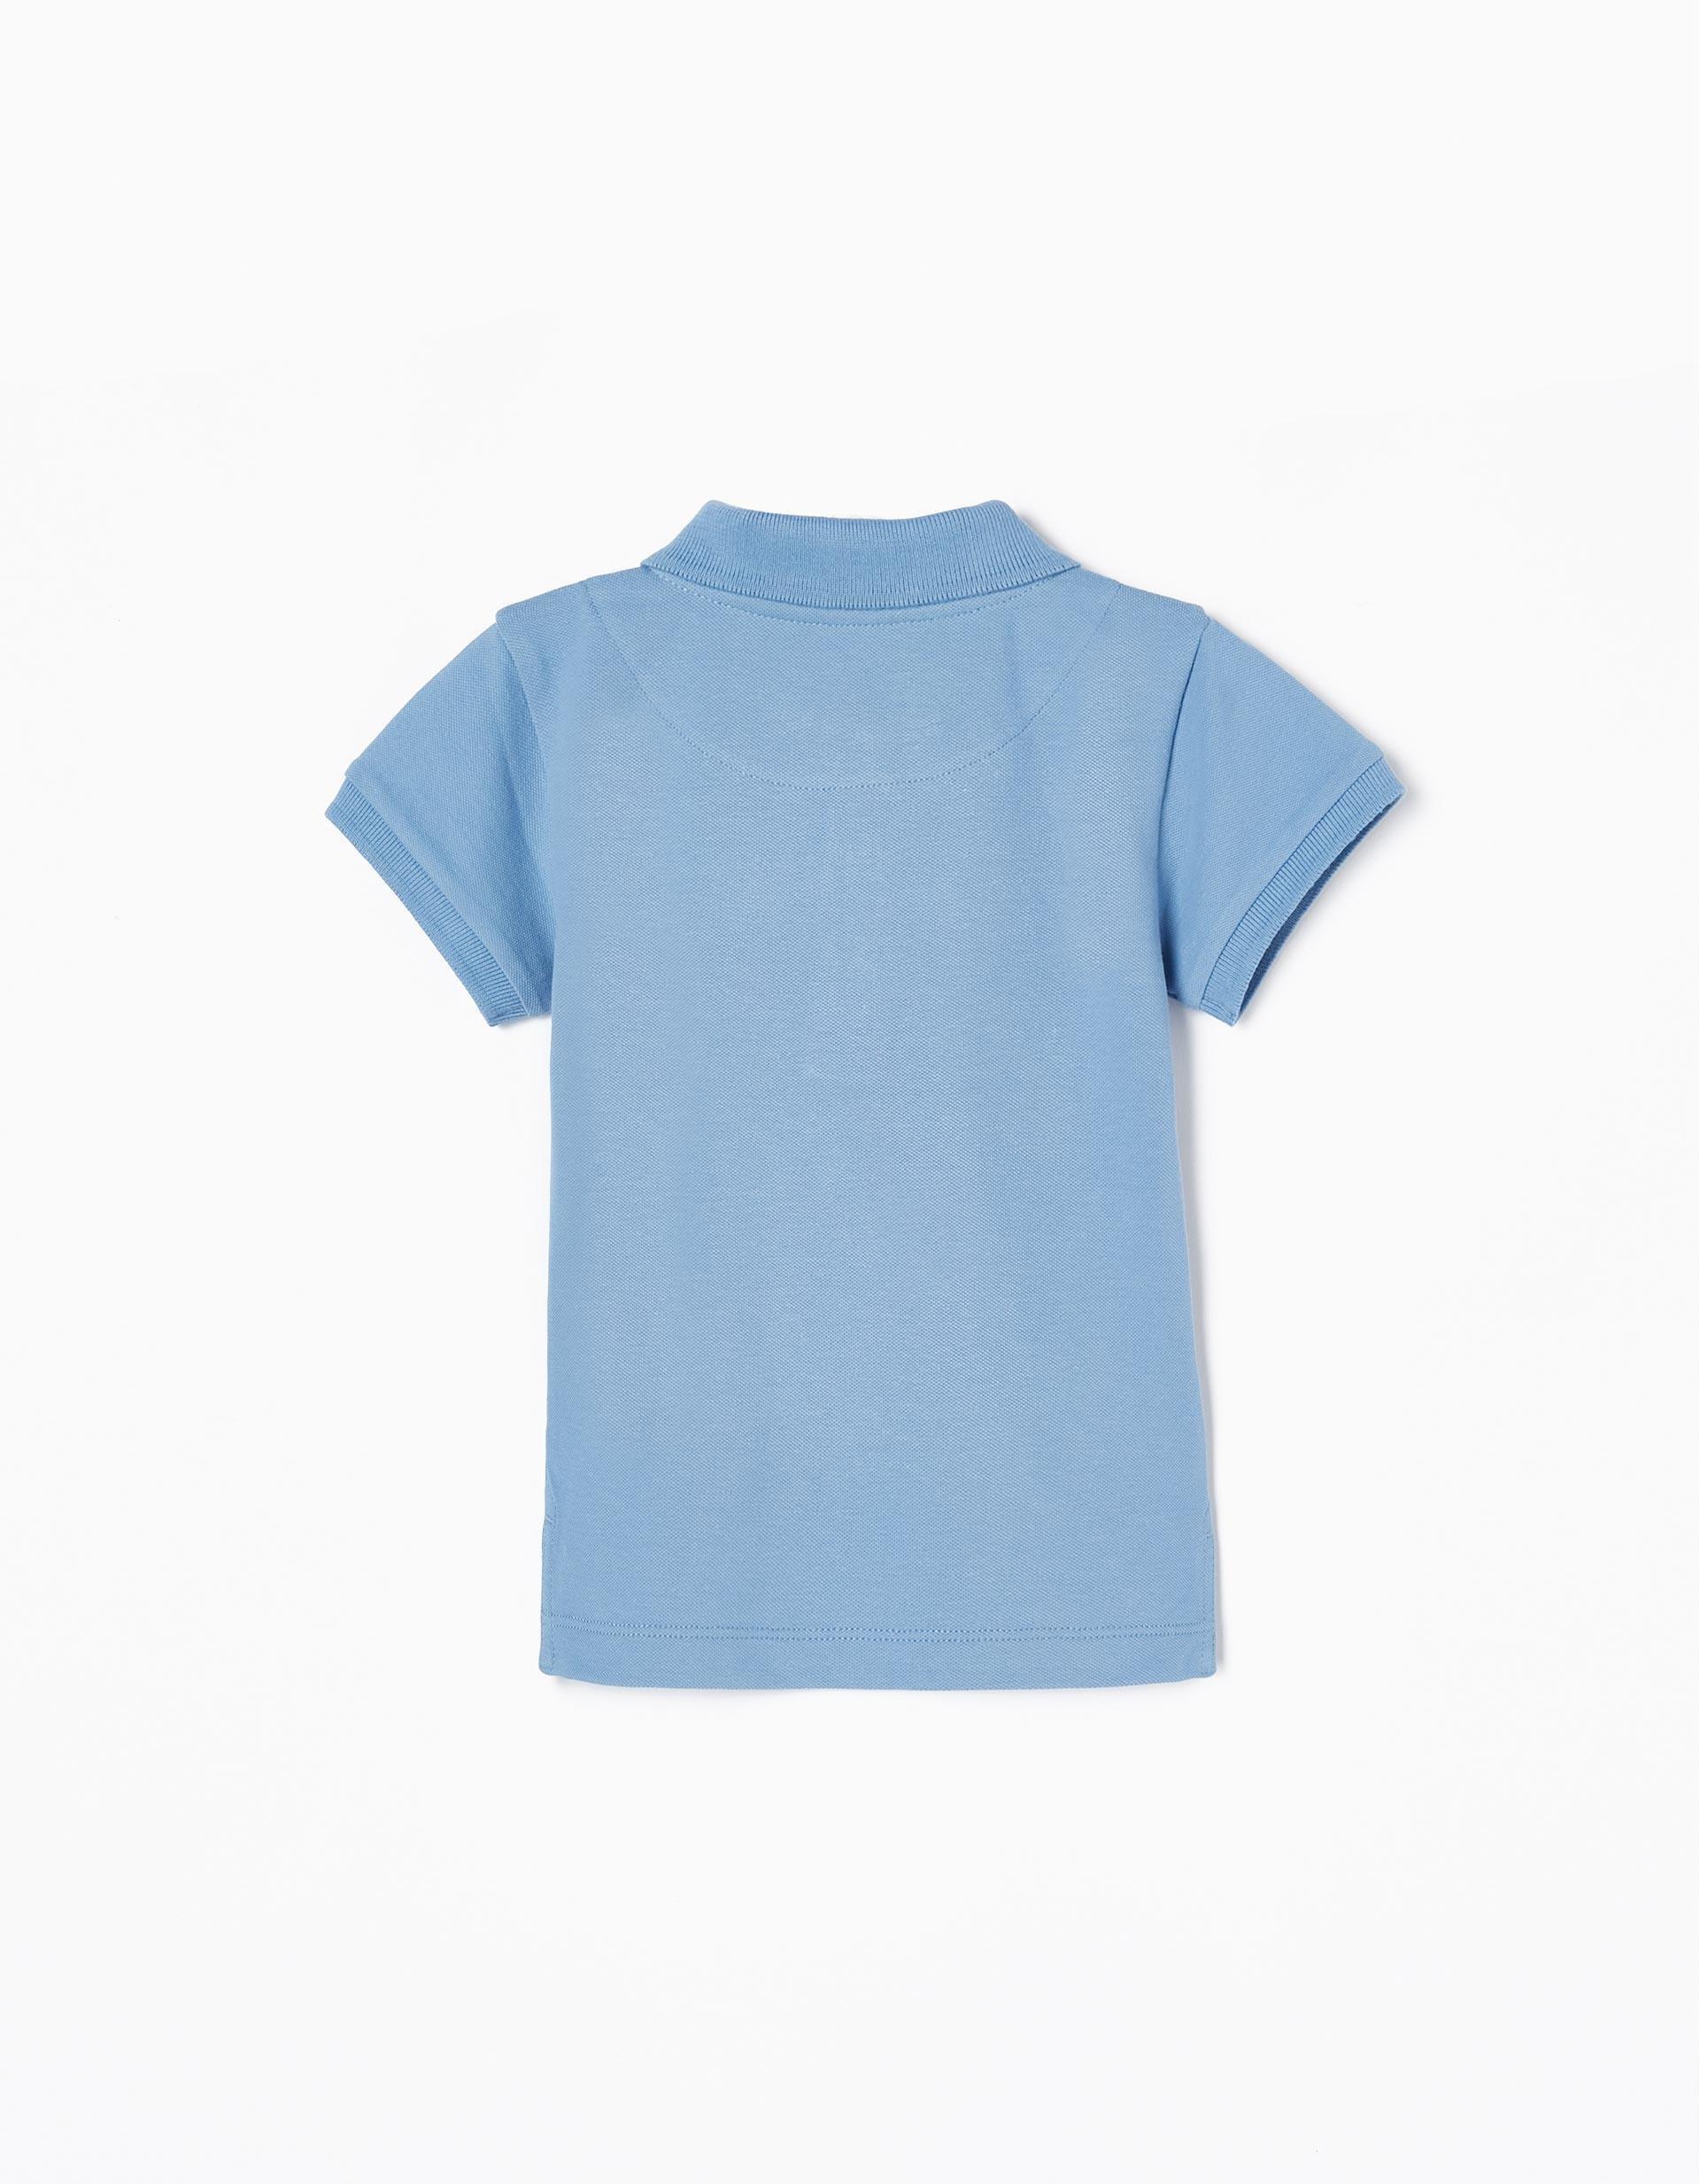 Zippy - Blue Polo Neck Shirt, Baby Boys